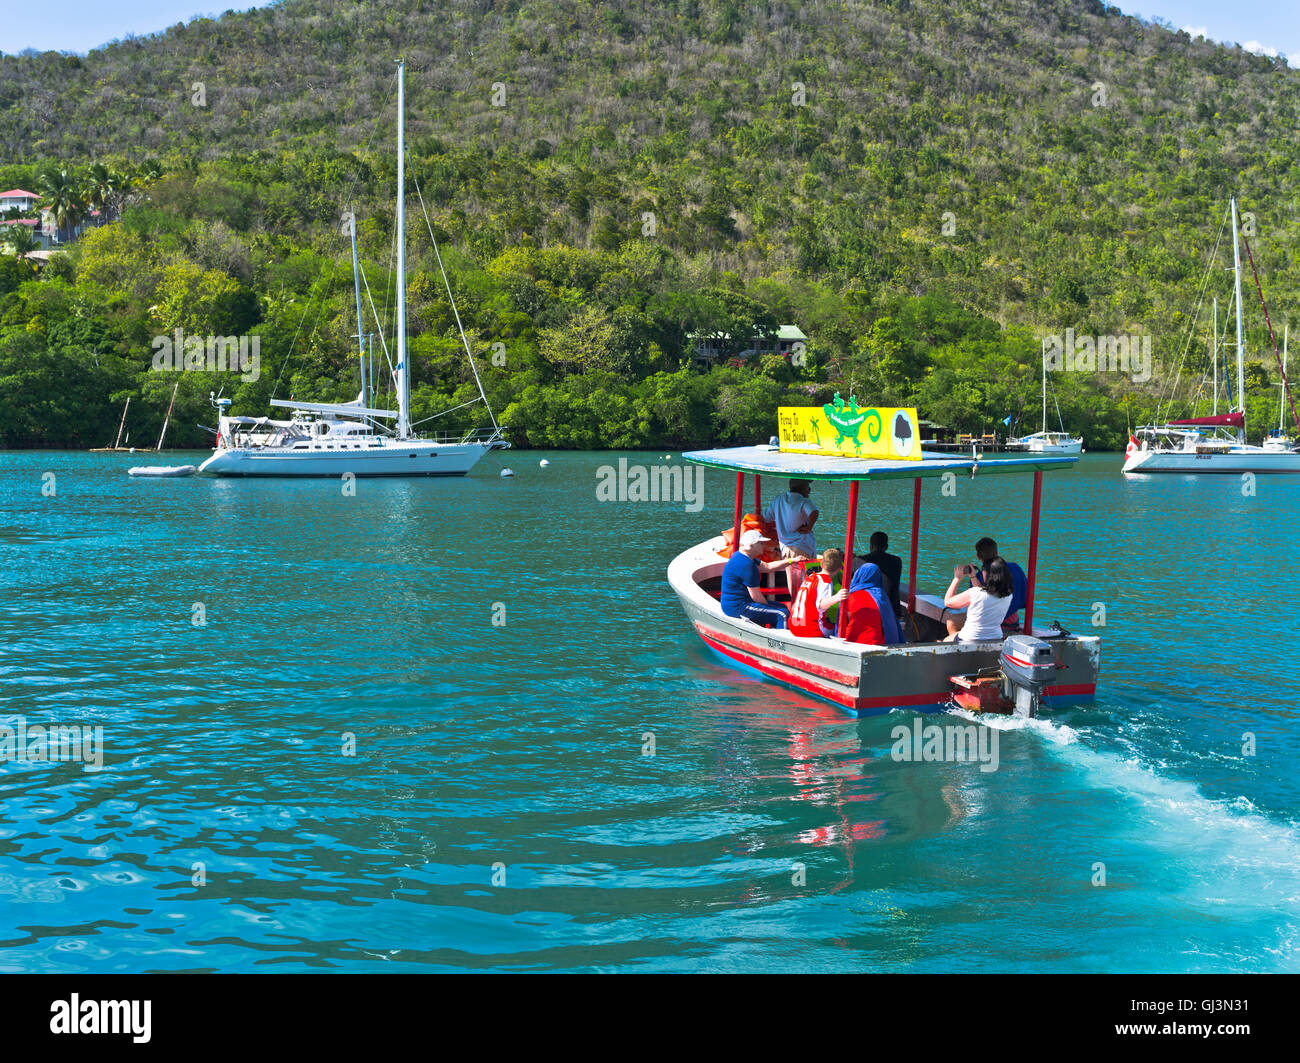 Dh Porto di Marigot Bay St Lucia Caraibi Caraibi acqua taxi traghetto Dottor Dolittle spiaggia vacanze in barca west indies Foto Stock